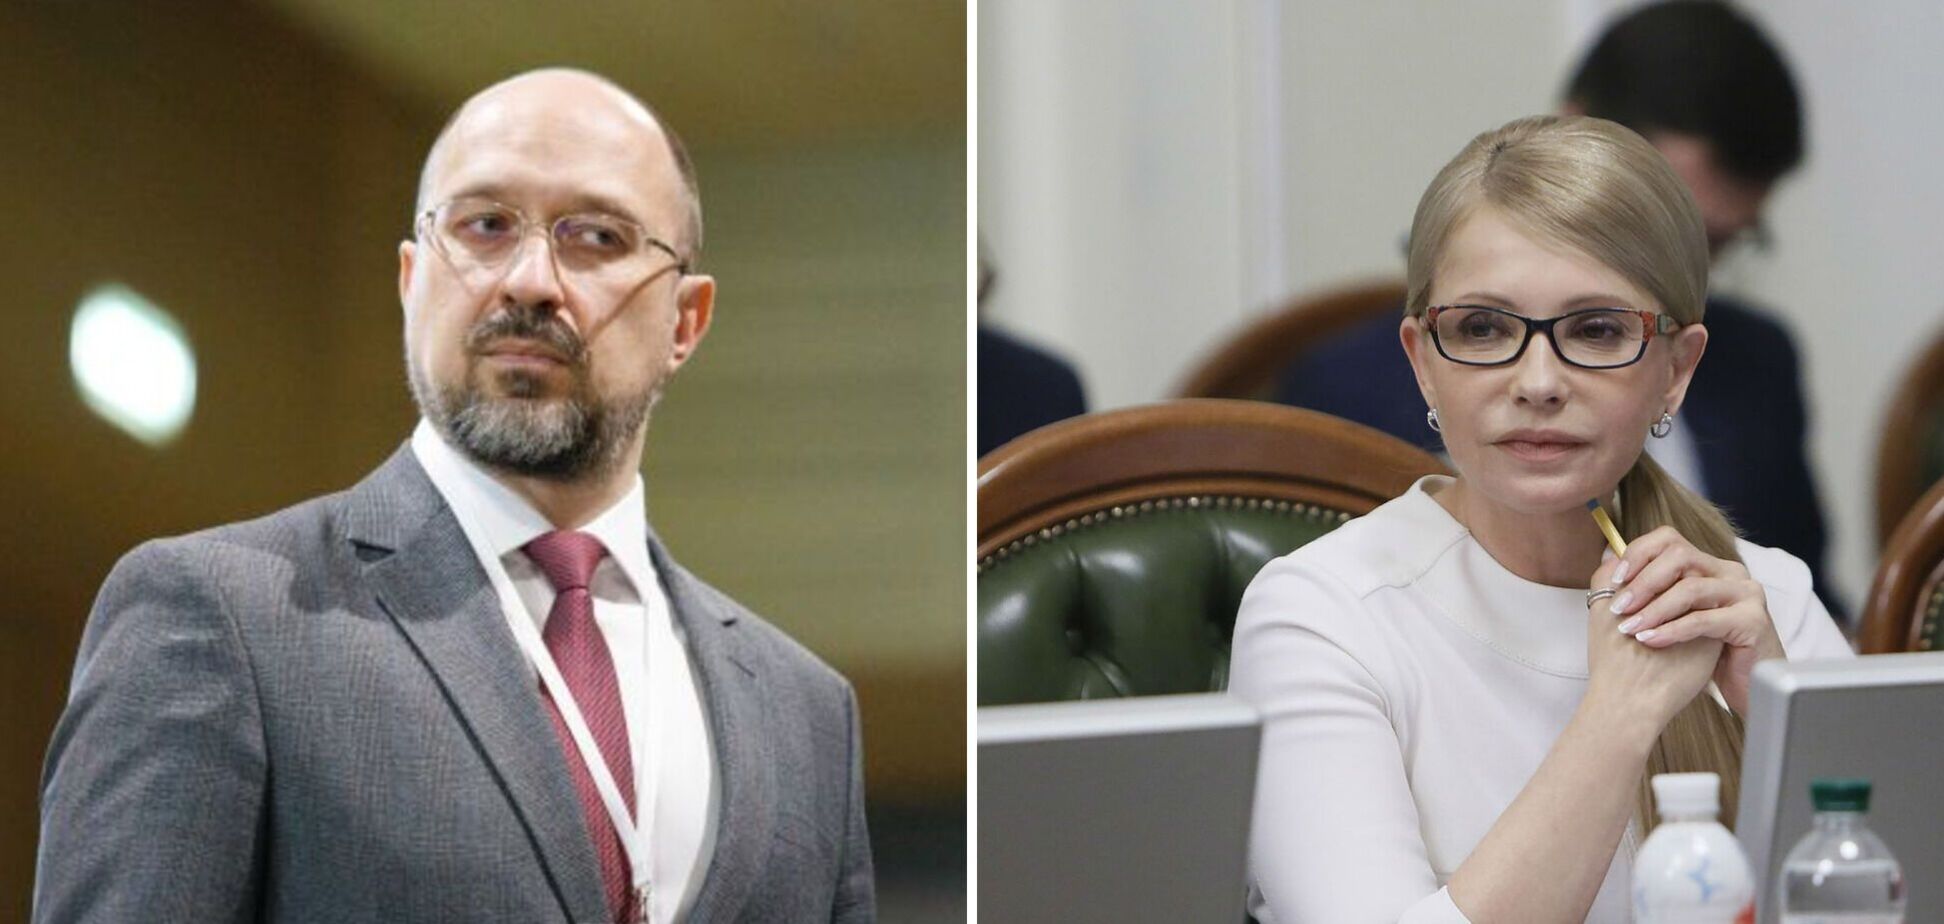 Українці хочуть нового прем’єра, найбільша підтримка – у Юлії Тимошенко, – соціологи